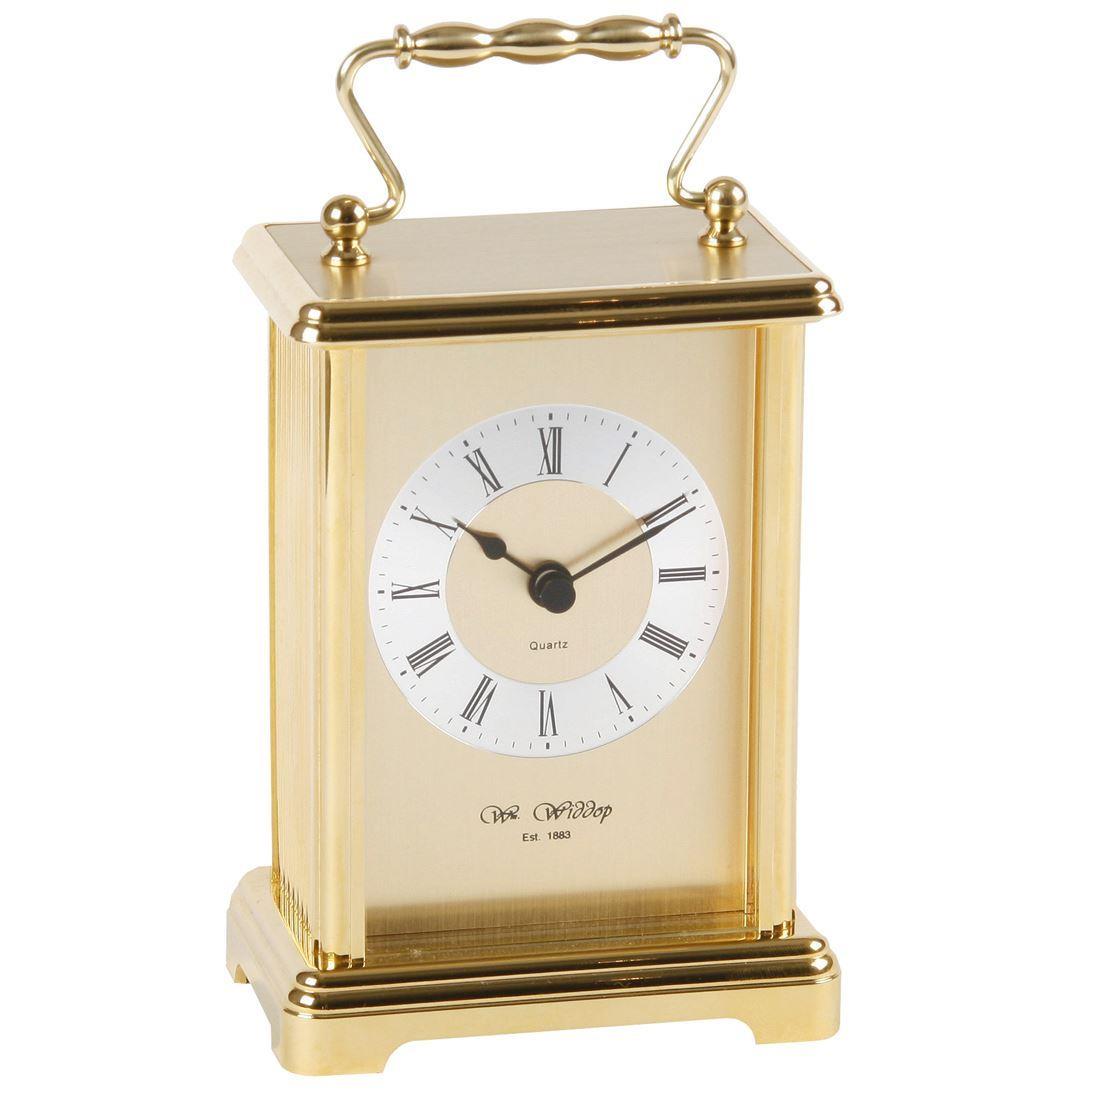 Widdop Gilt Carriage Clock W2406